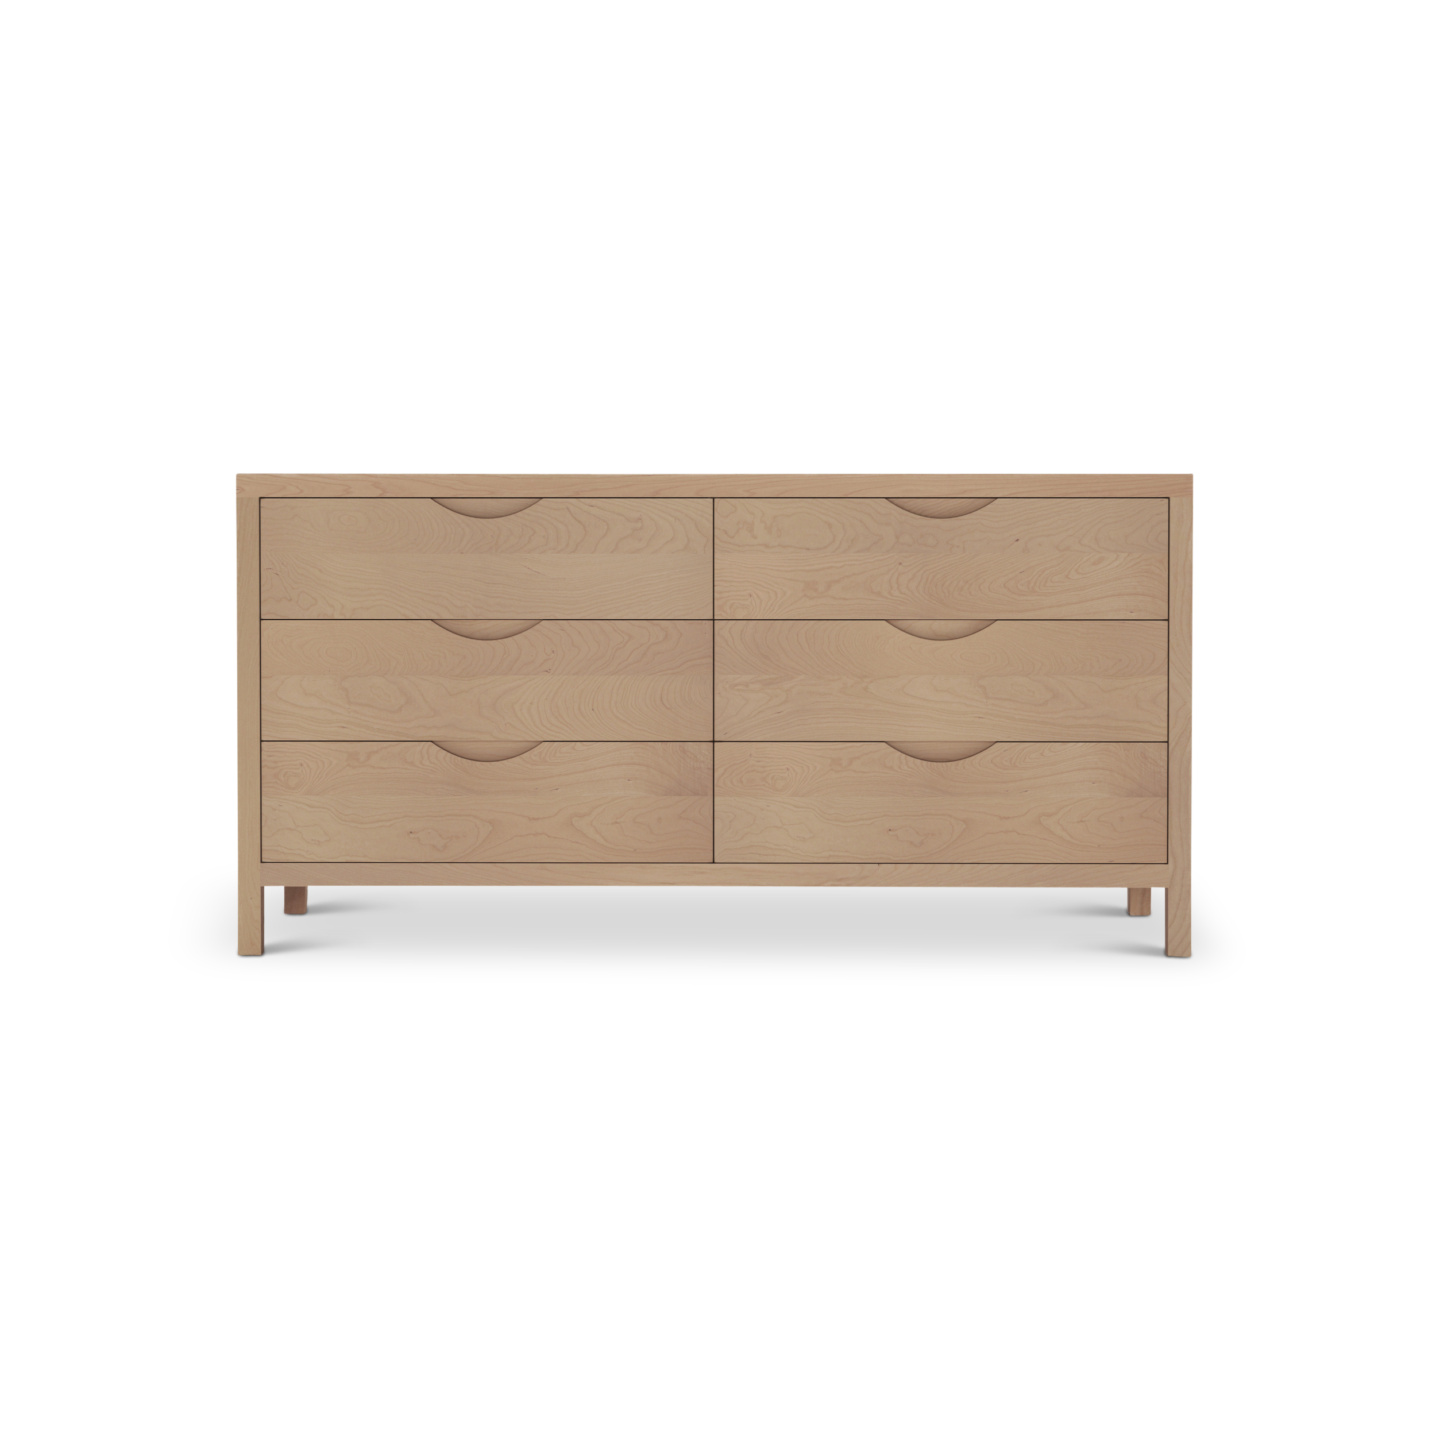 6 drawer 60" Scandinavian cherry wood dresser